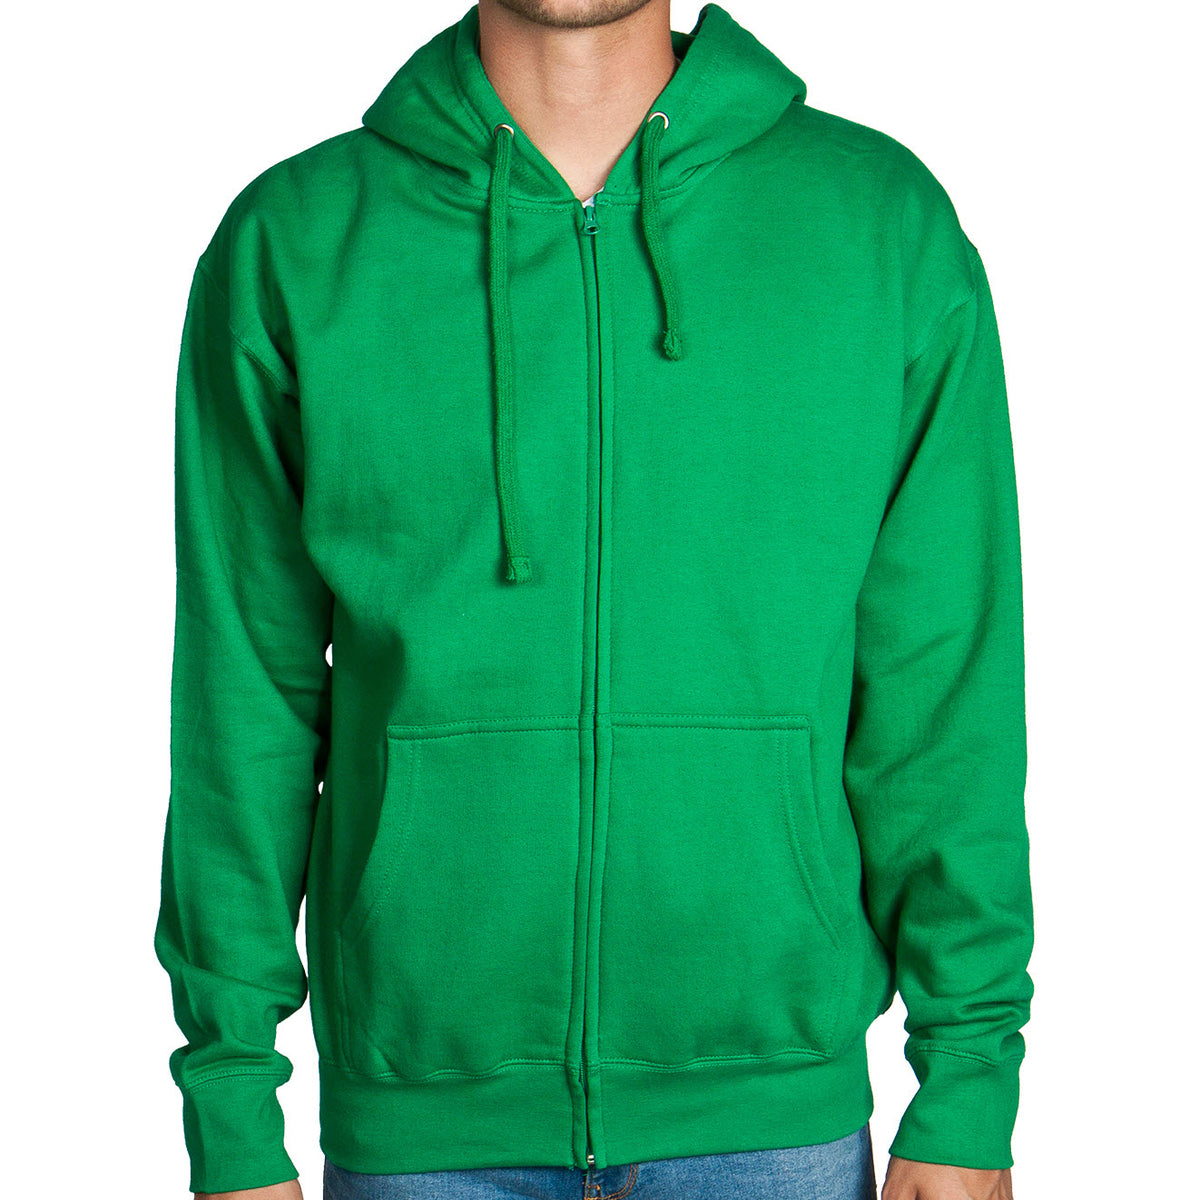 Green Zip Up Hoodie Sweatshirt – Flex Suits